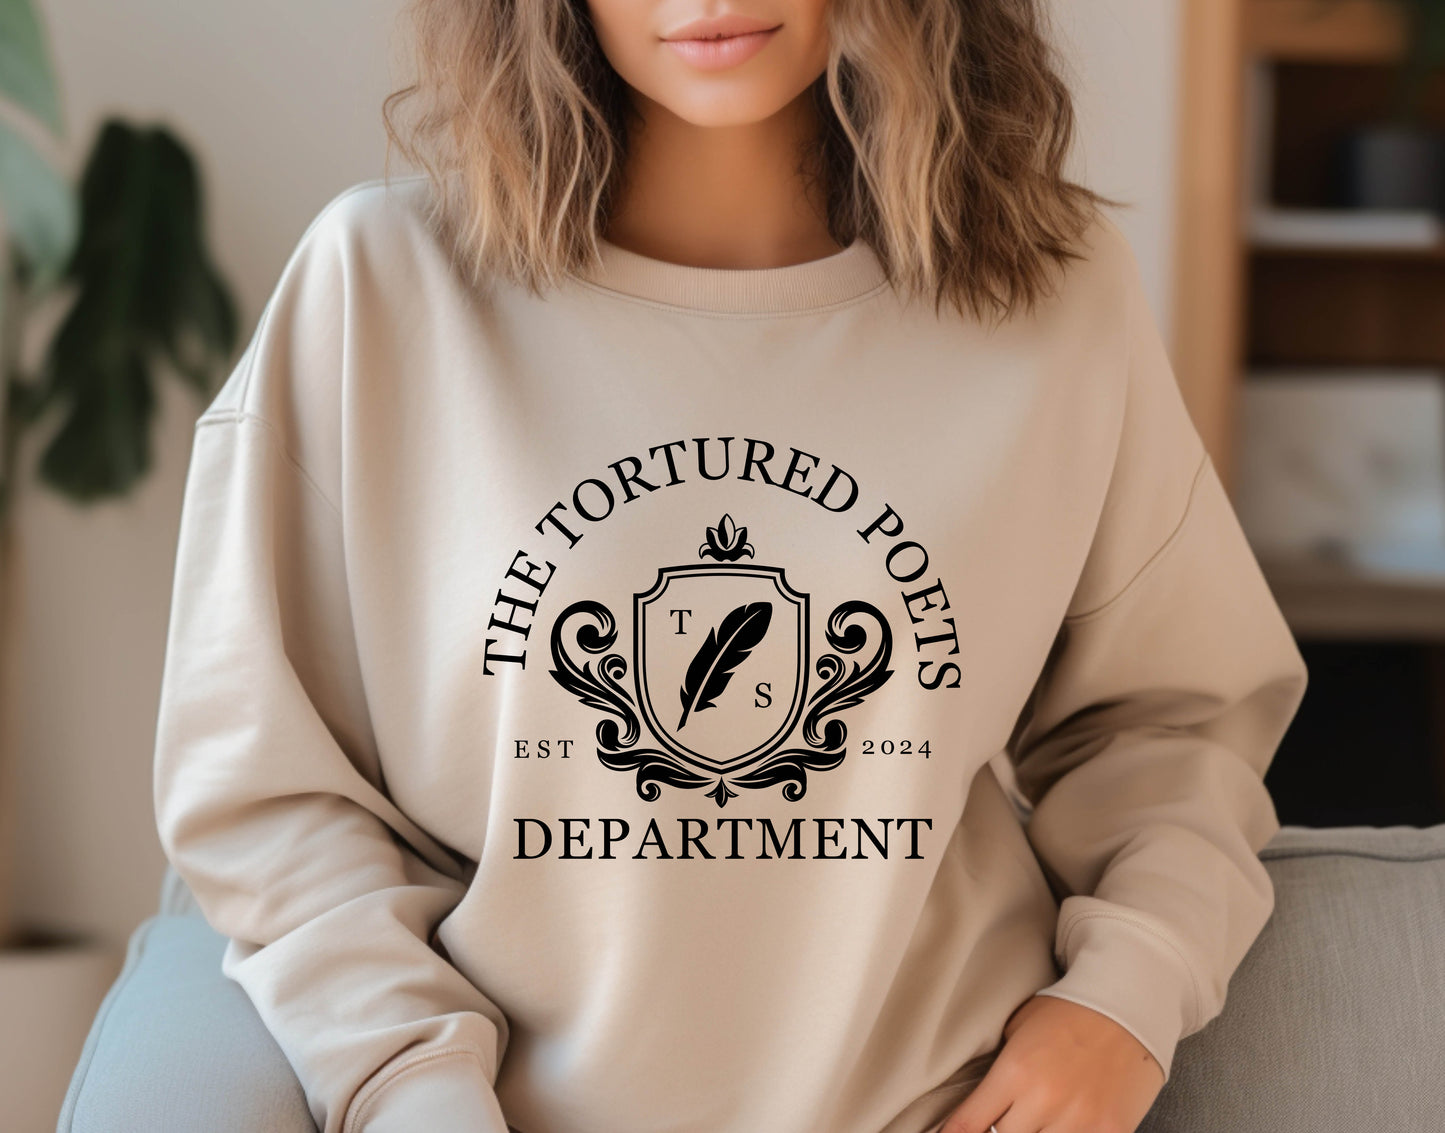 The Tortured Poets Department Crewneck Sweatshirt